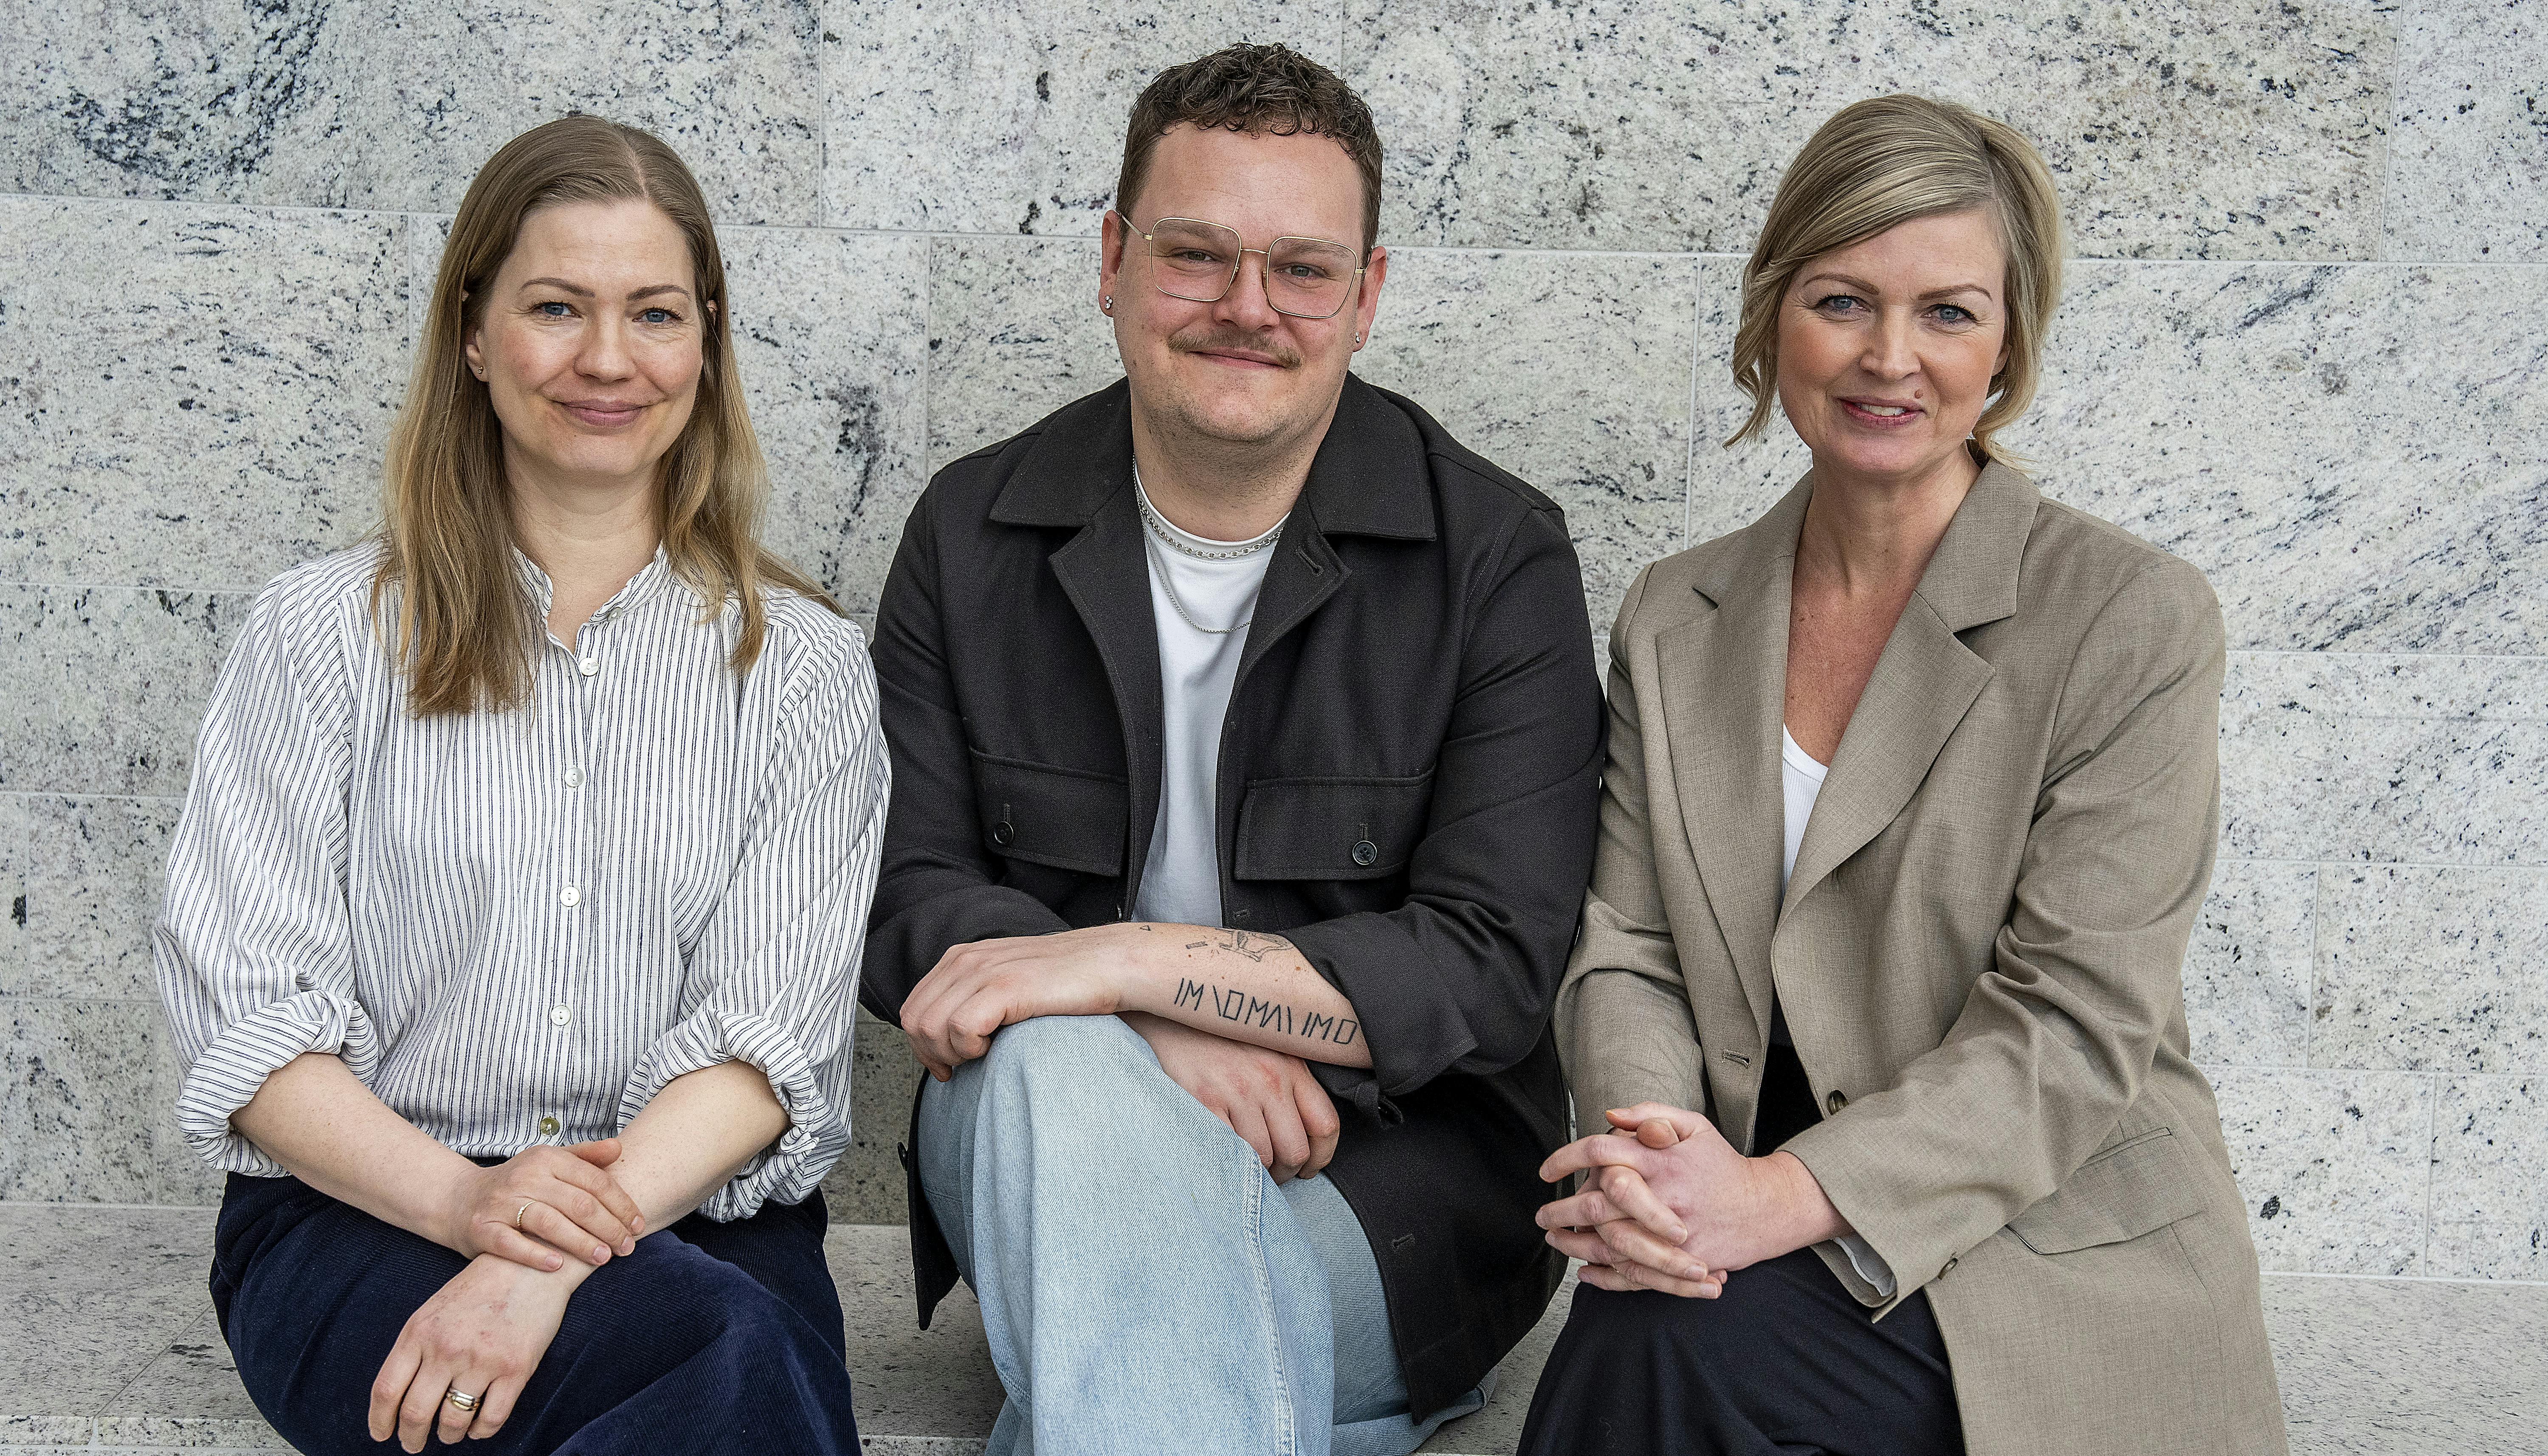 Ugens gæst i 'Det, vi elsker' er journalist og podcastvært Christoffer Mygind Juul